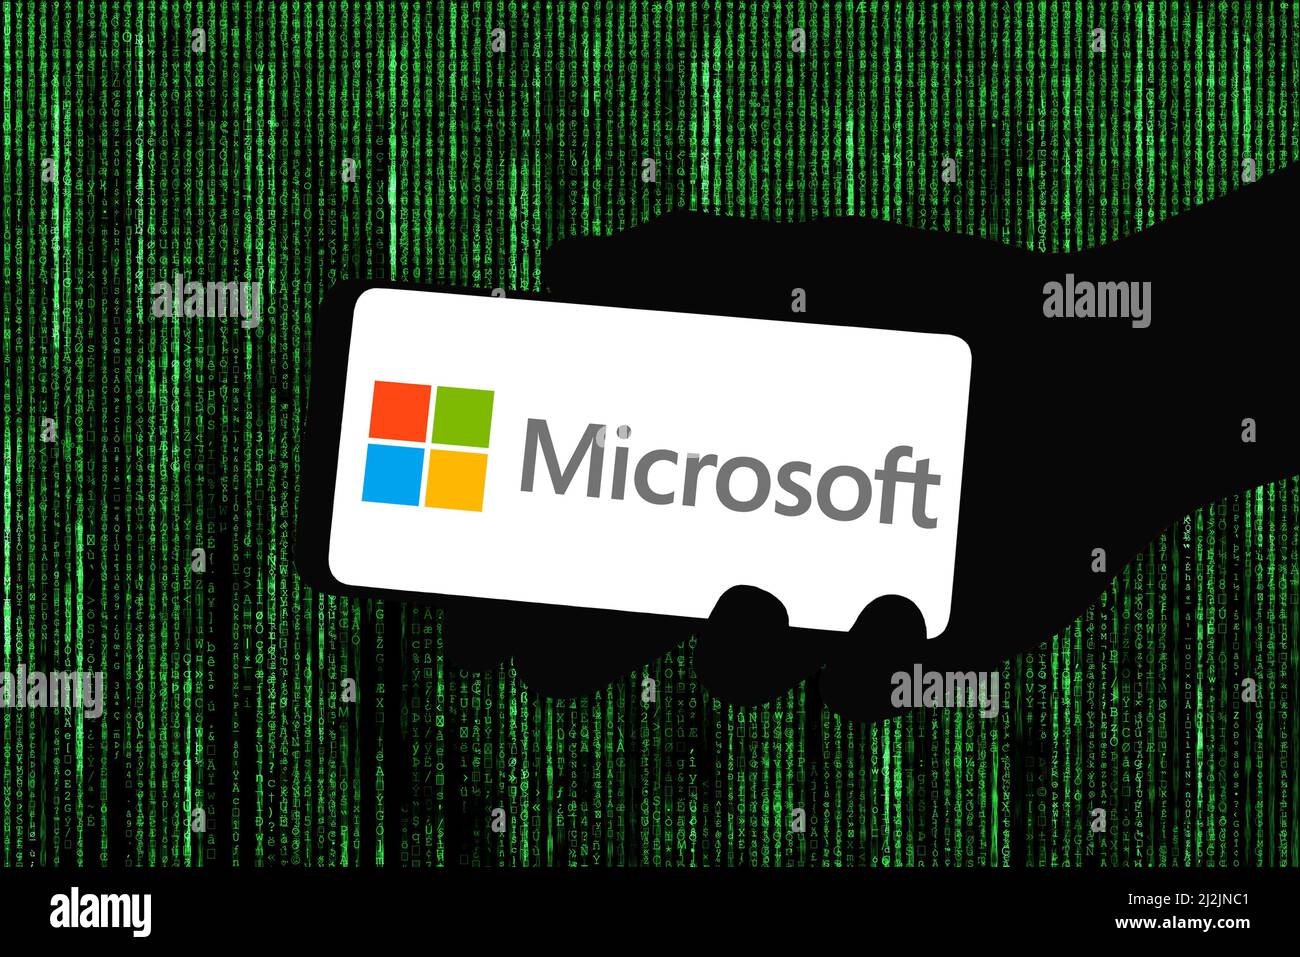 Marque Microsoft sur appareil mobile Banque D'Images